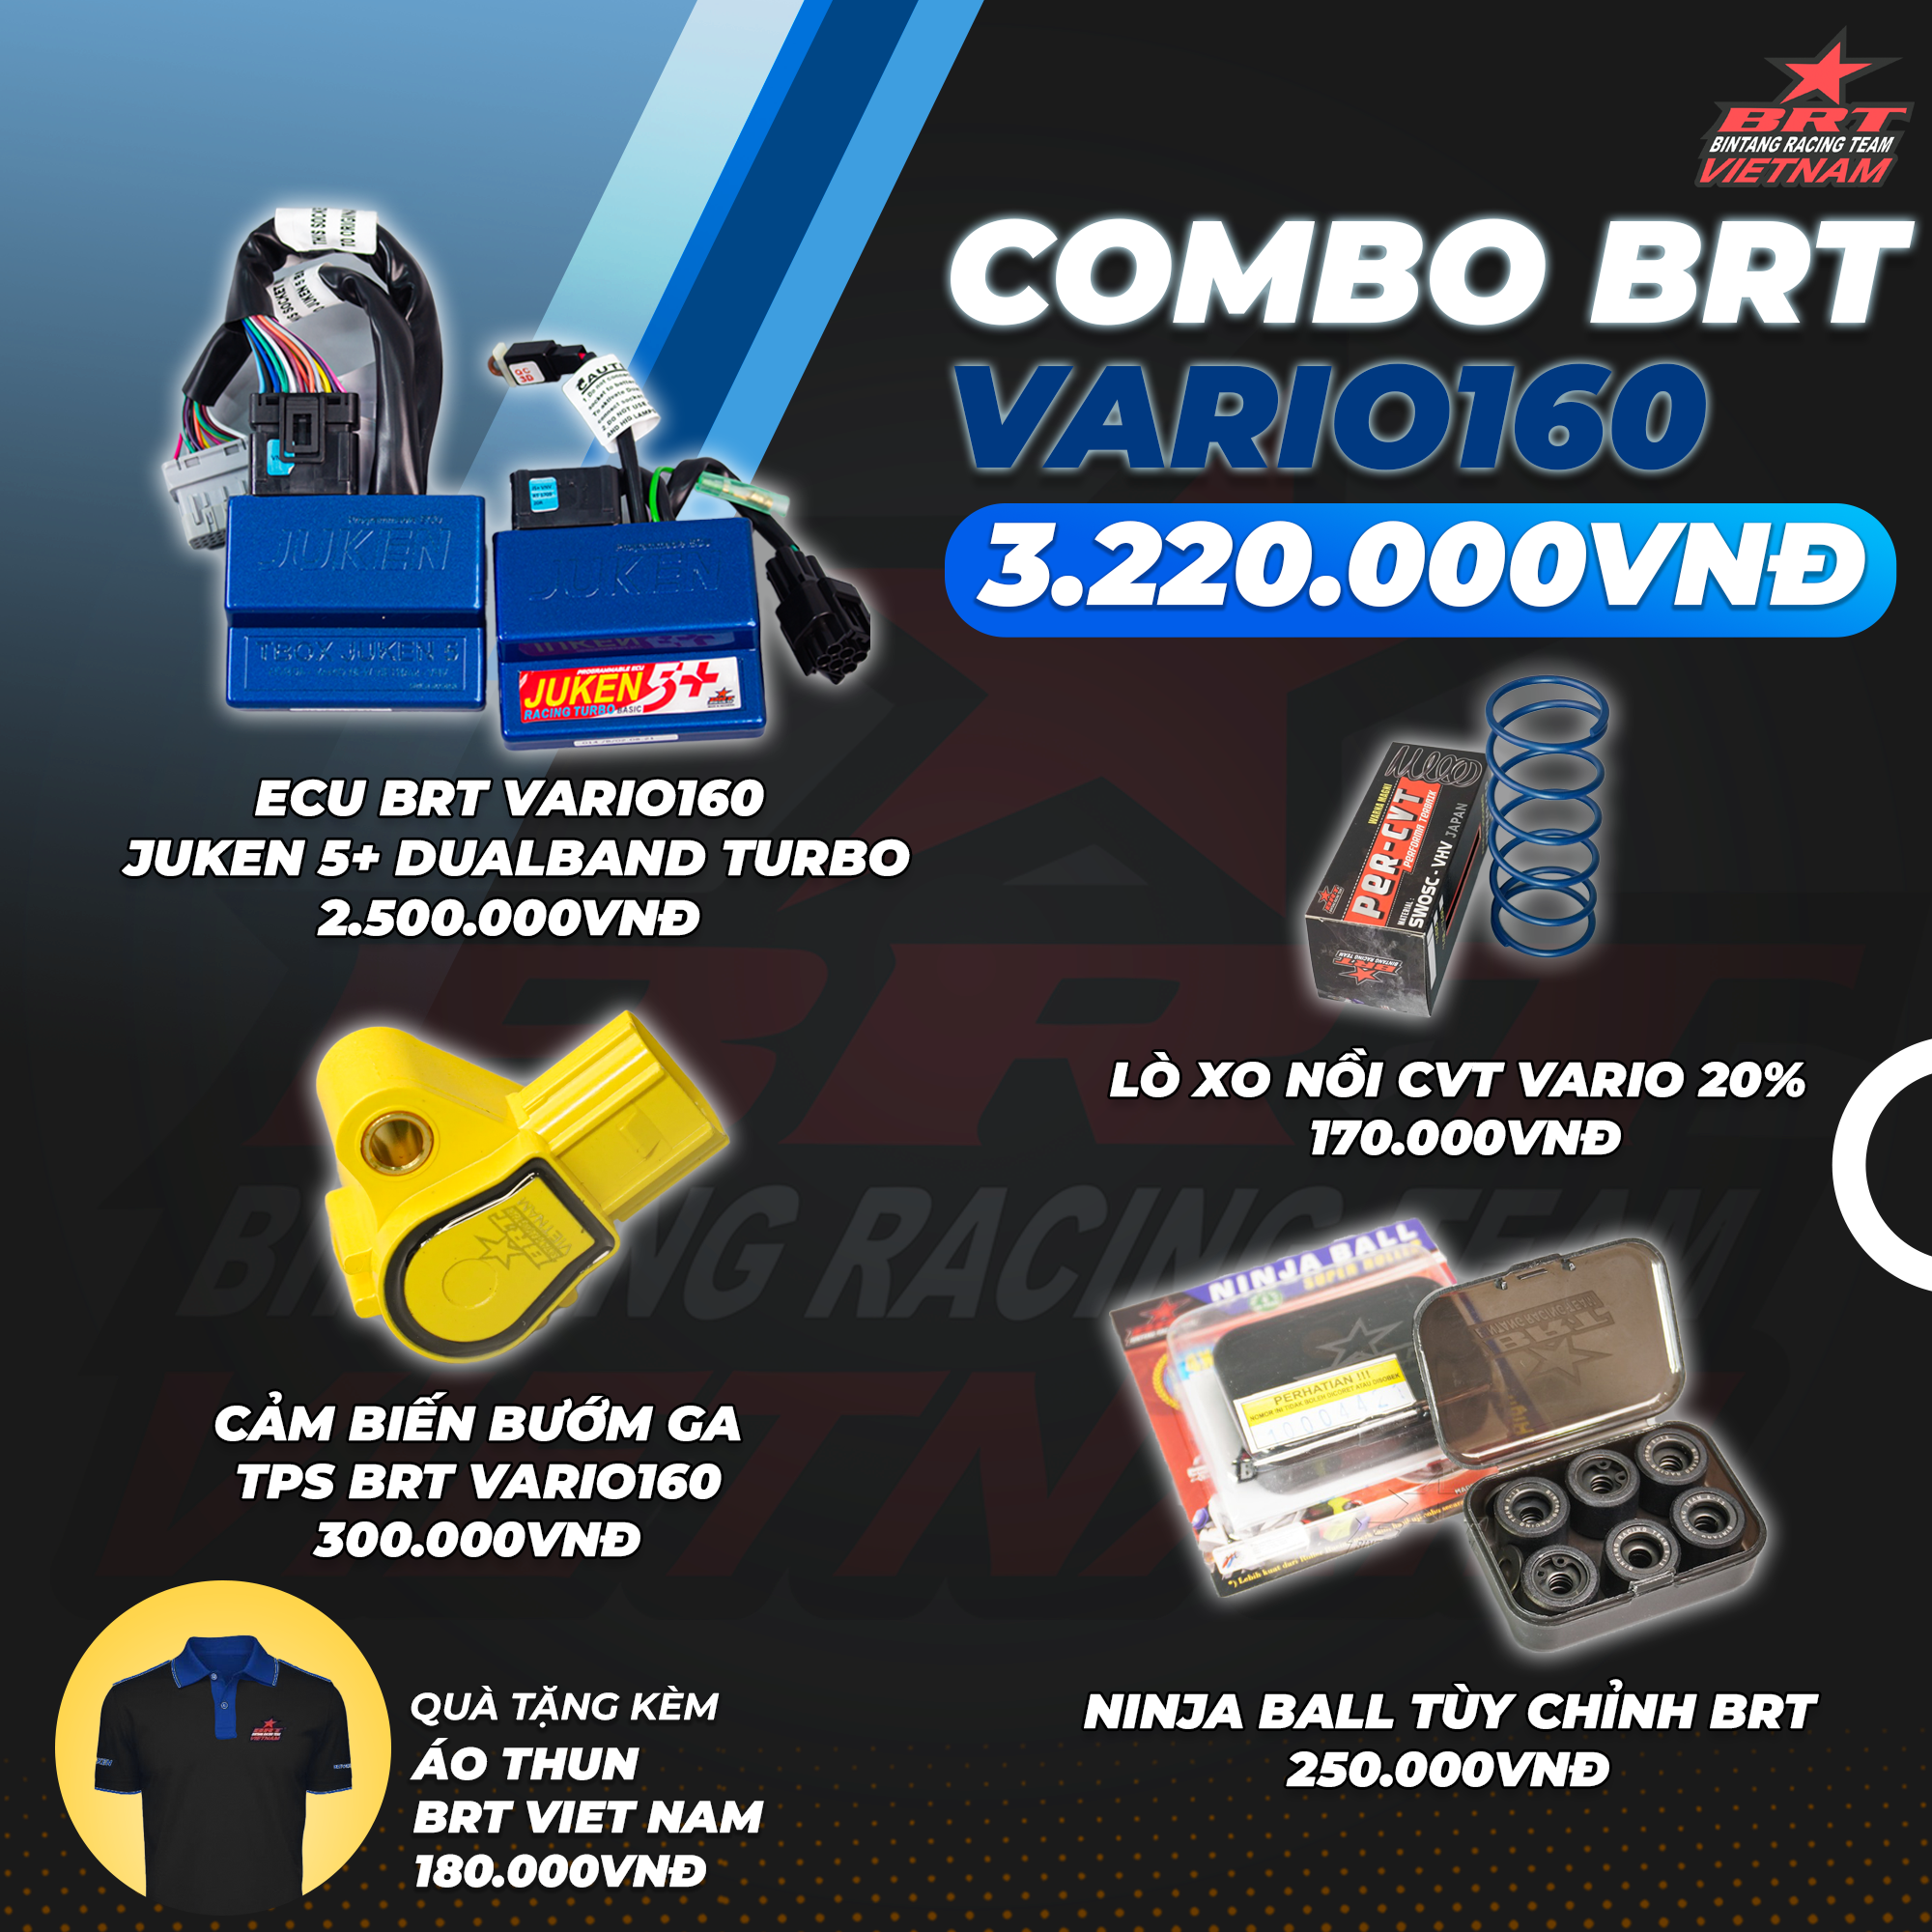  Combo BRT Vario160 - Tặng kèm áo thun đen BRT VIET NAM 